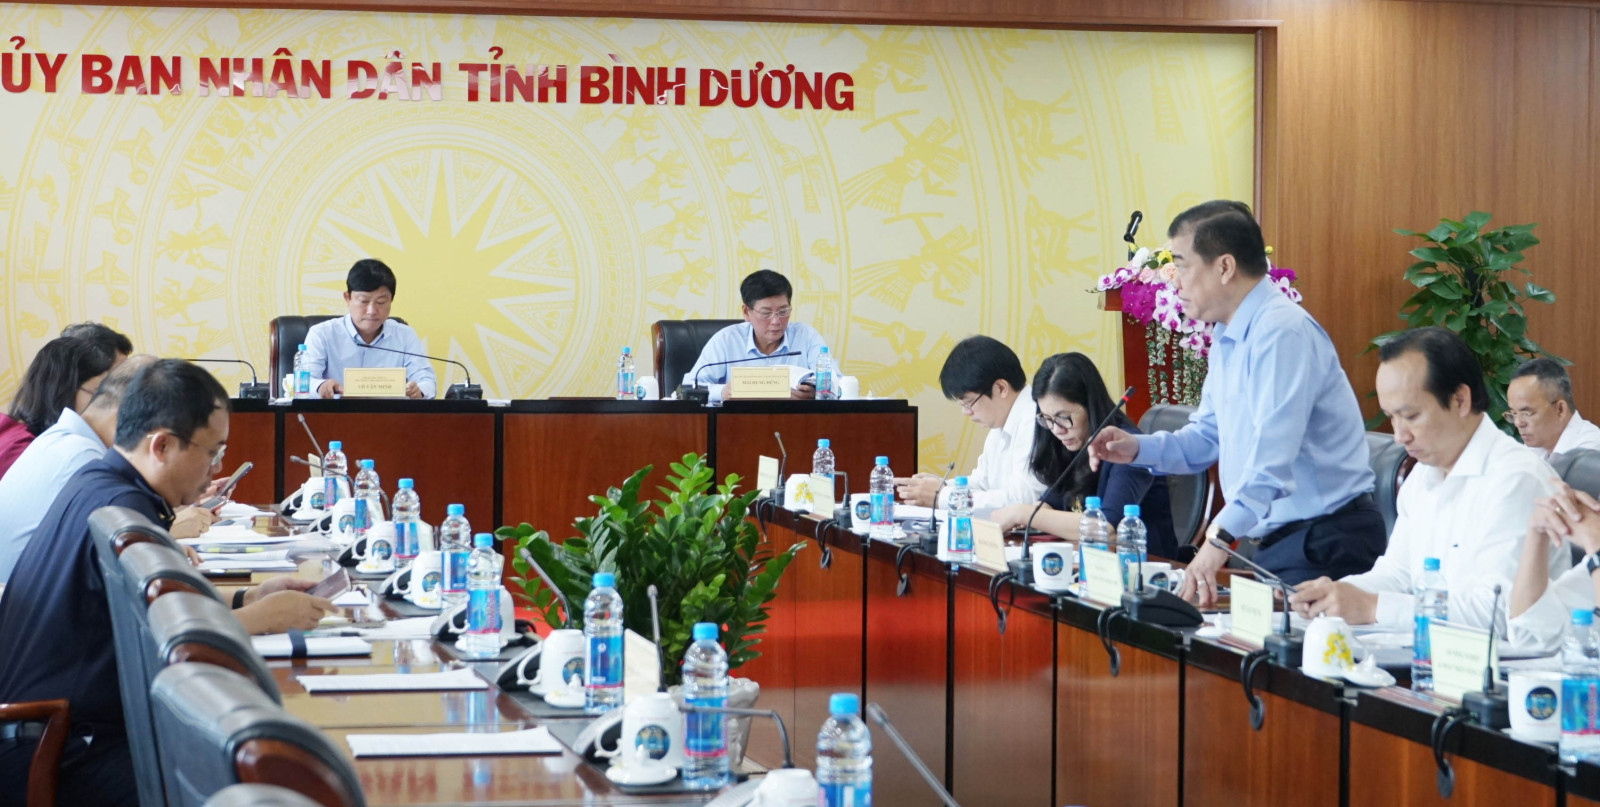 Ông Võ Văn Minh, Phó Bí thư Tỉnh ủy, Chủ tịch UBND tỉnh, Trưởng Ban chỉ đạo giải quyết khó khăn, vướng mắc của doanh nghiệp trên địa bàn tỉnh chủ trì phiên họp